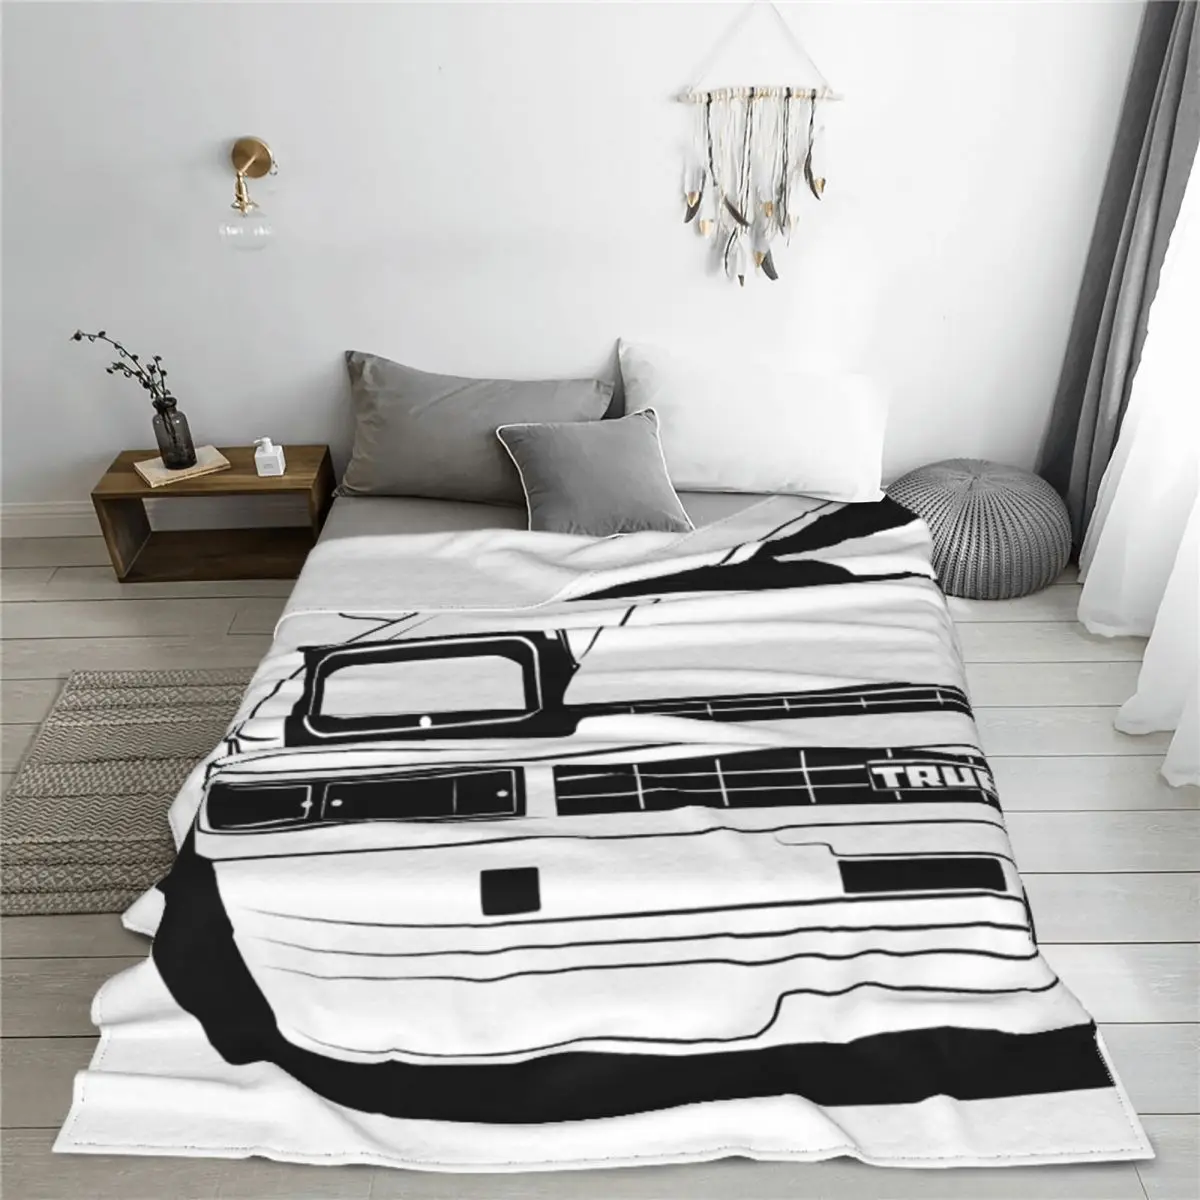 Автомобильное одеяло AE86 Hachiroku Trueno с флисовым принтом, уютное супер теплое покрывало для кровати, автомобильные постельные принадлежности